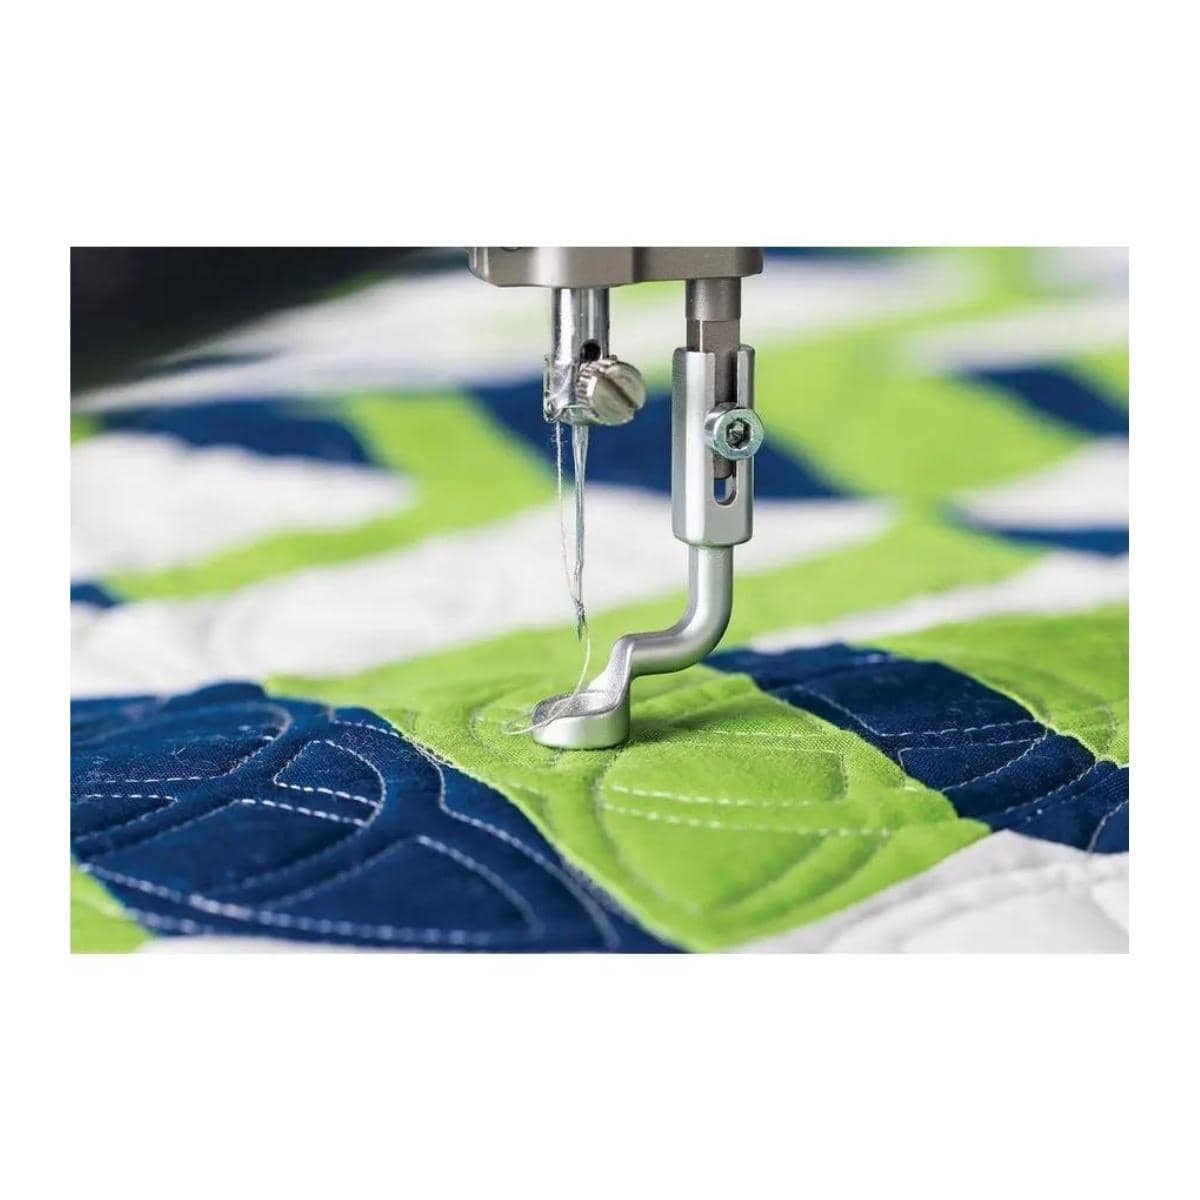 Grace Q'nique 19X Elite Longarm Quilting Machines – Quality Sewing & Vacuum